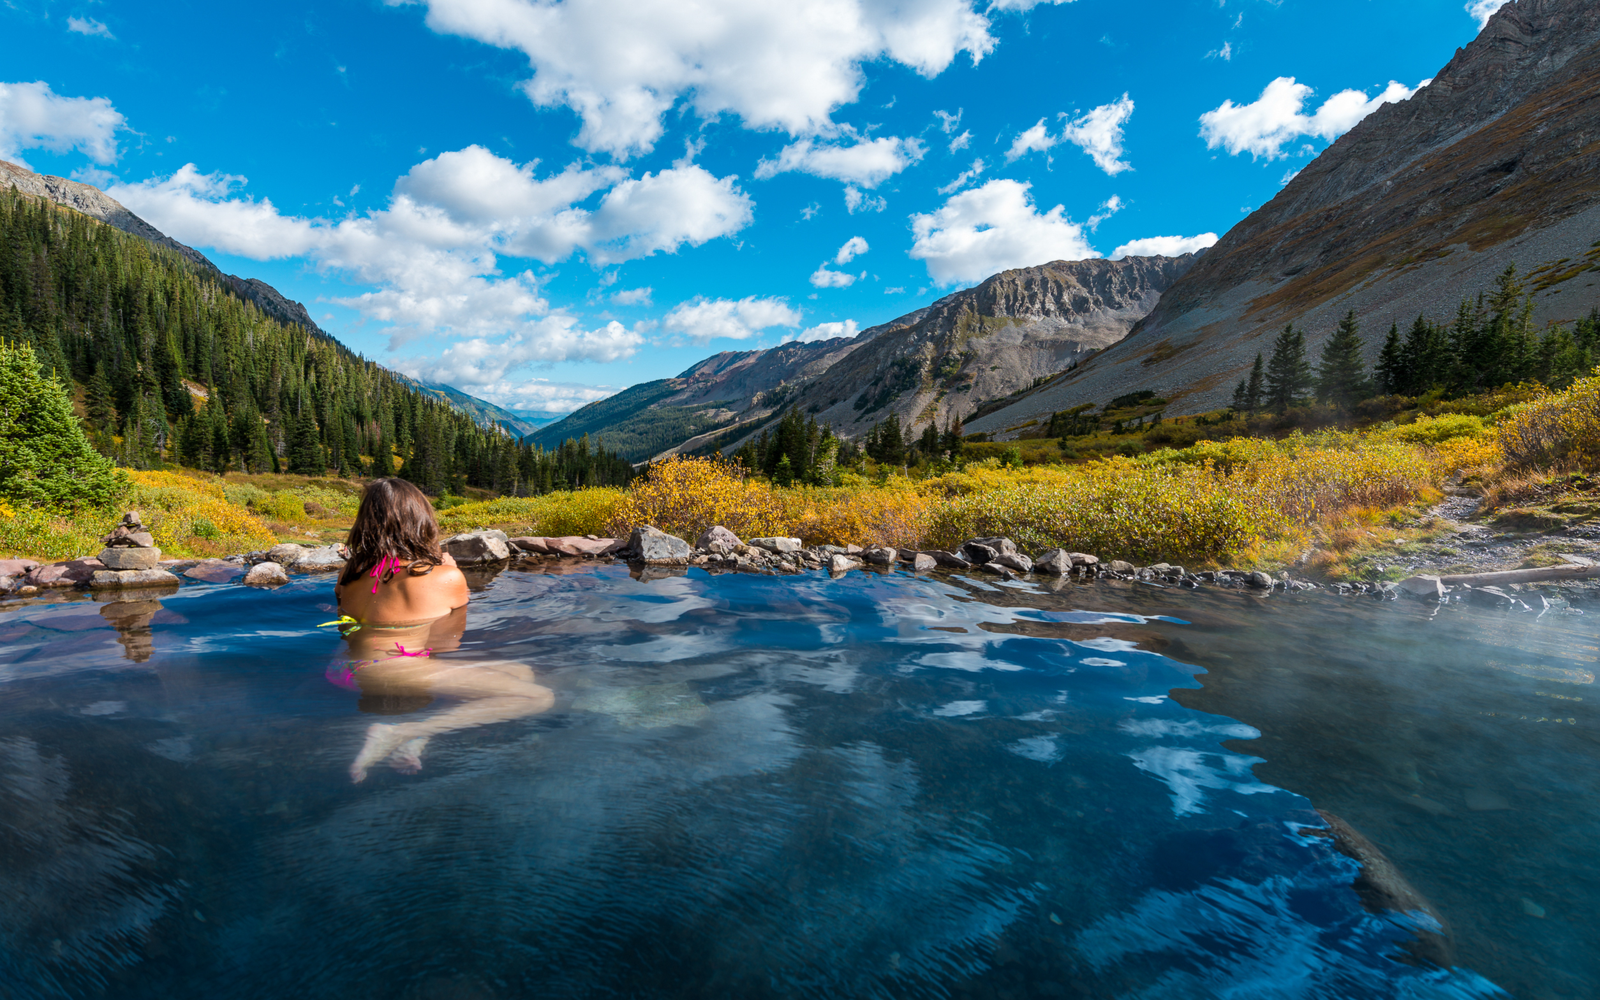 15 Best Hot Springs in Colorado in 2023